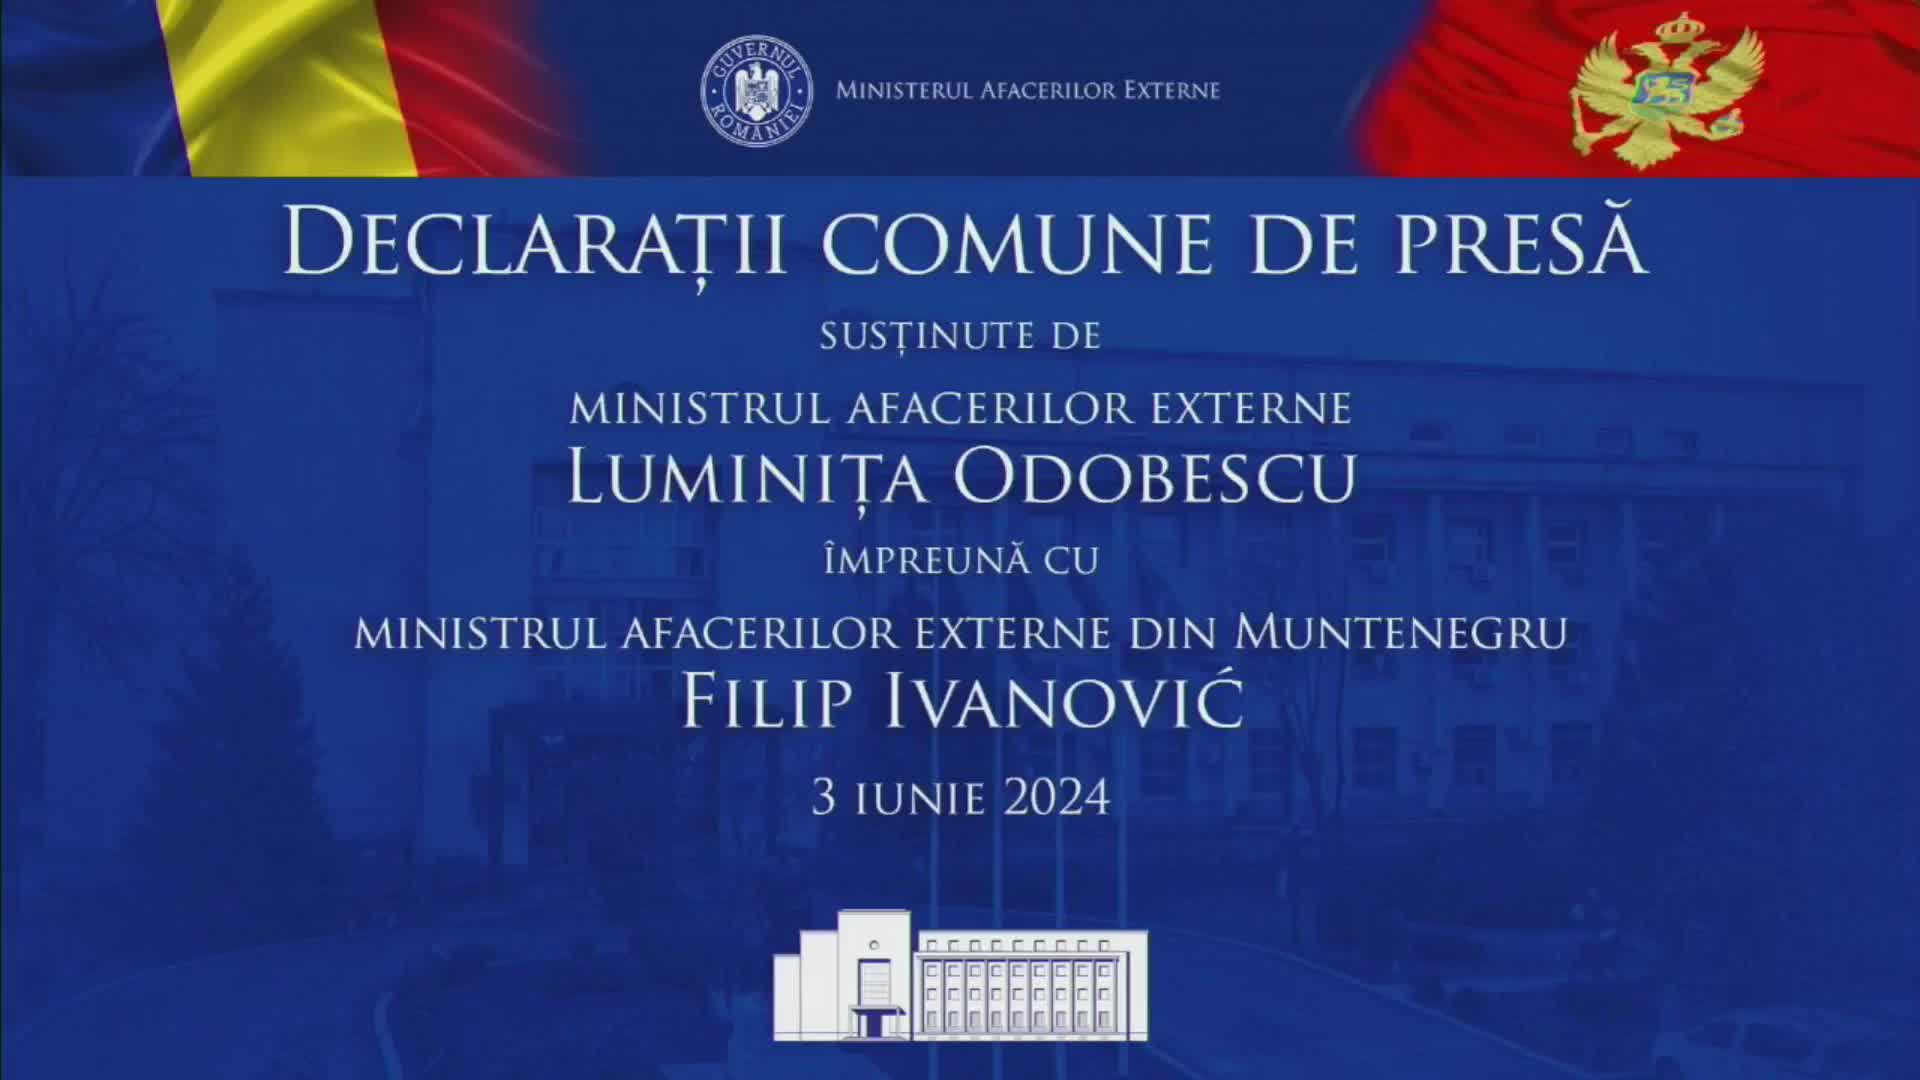 Declarații comune de presă susținute de ministrul Afacerilor Externe, Luminița Odobescu și ministrul Afacerilor Externe din Muntenegru, Filip Ivanović